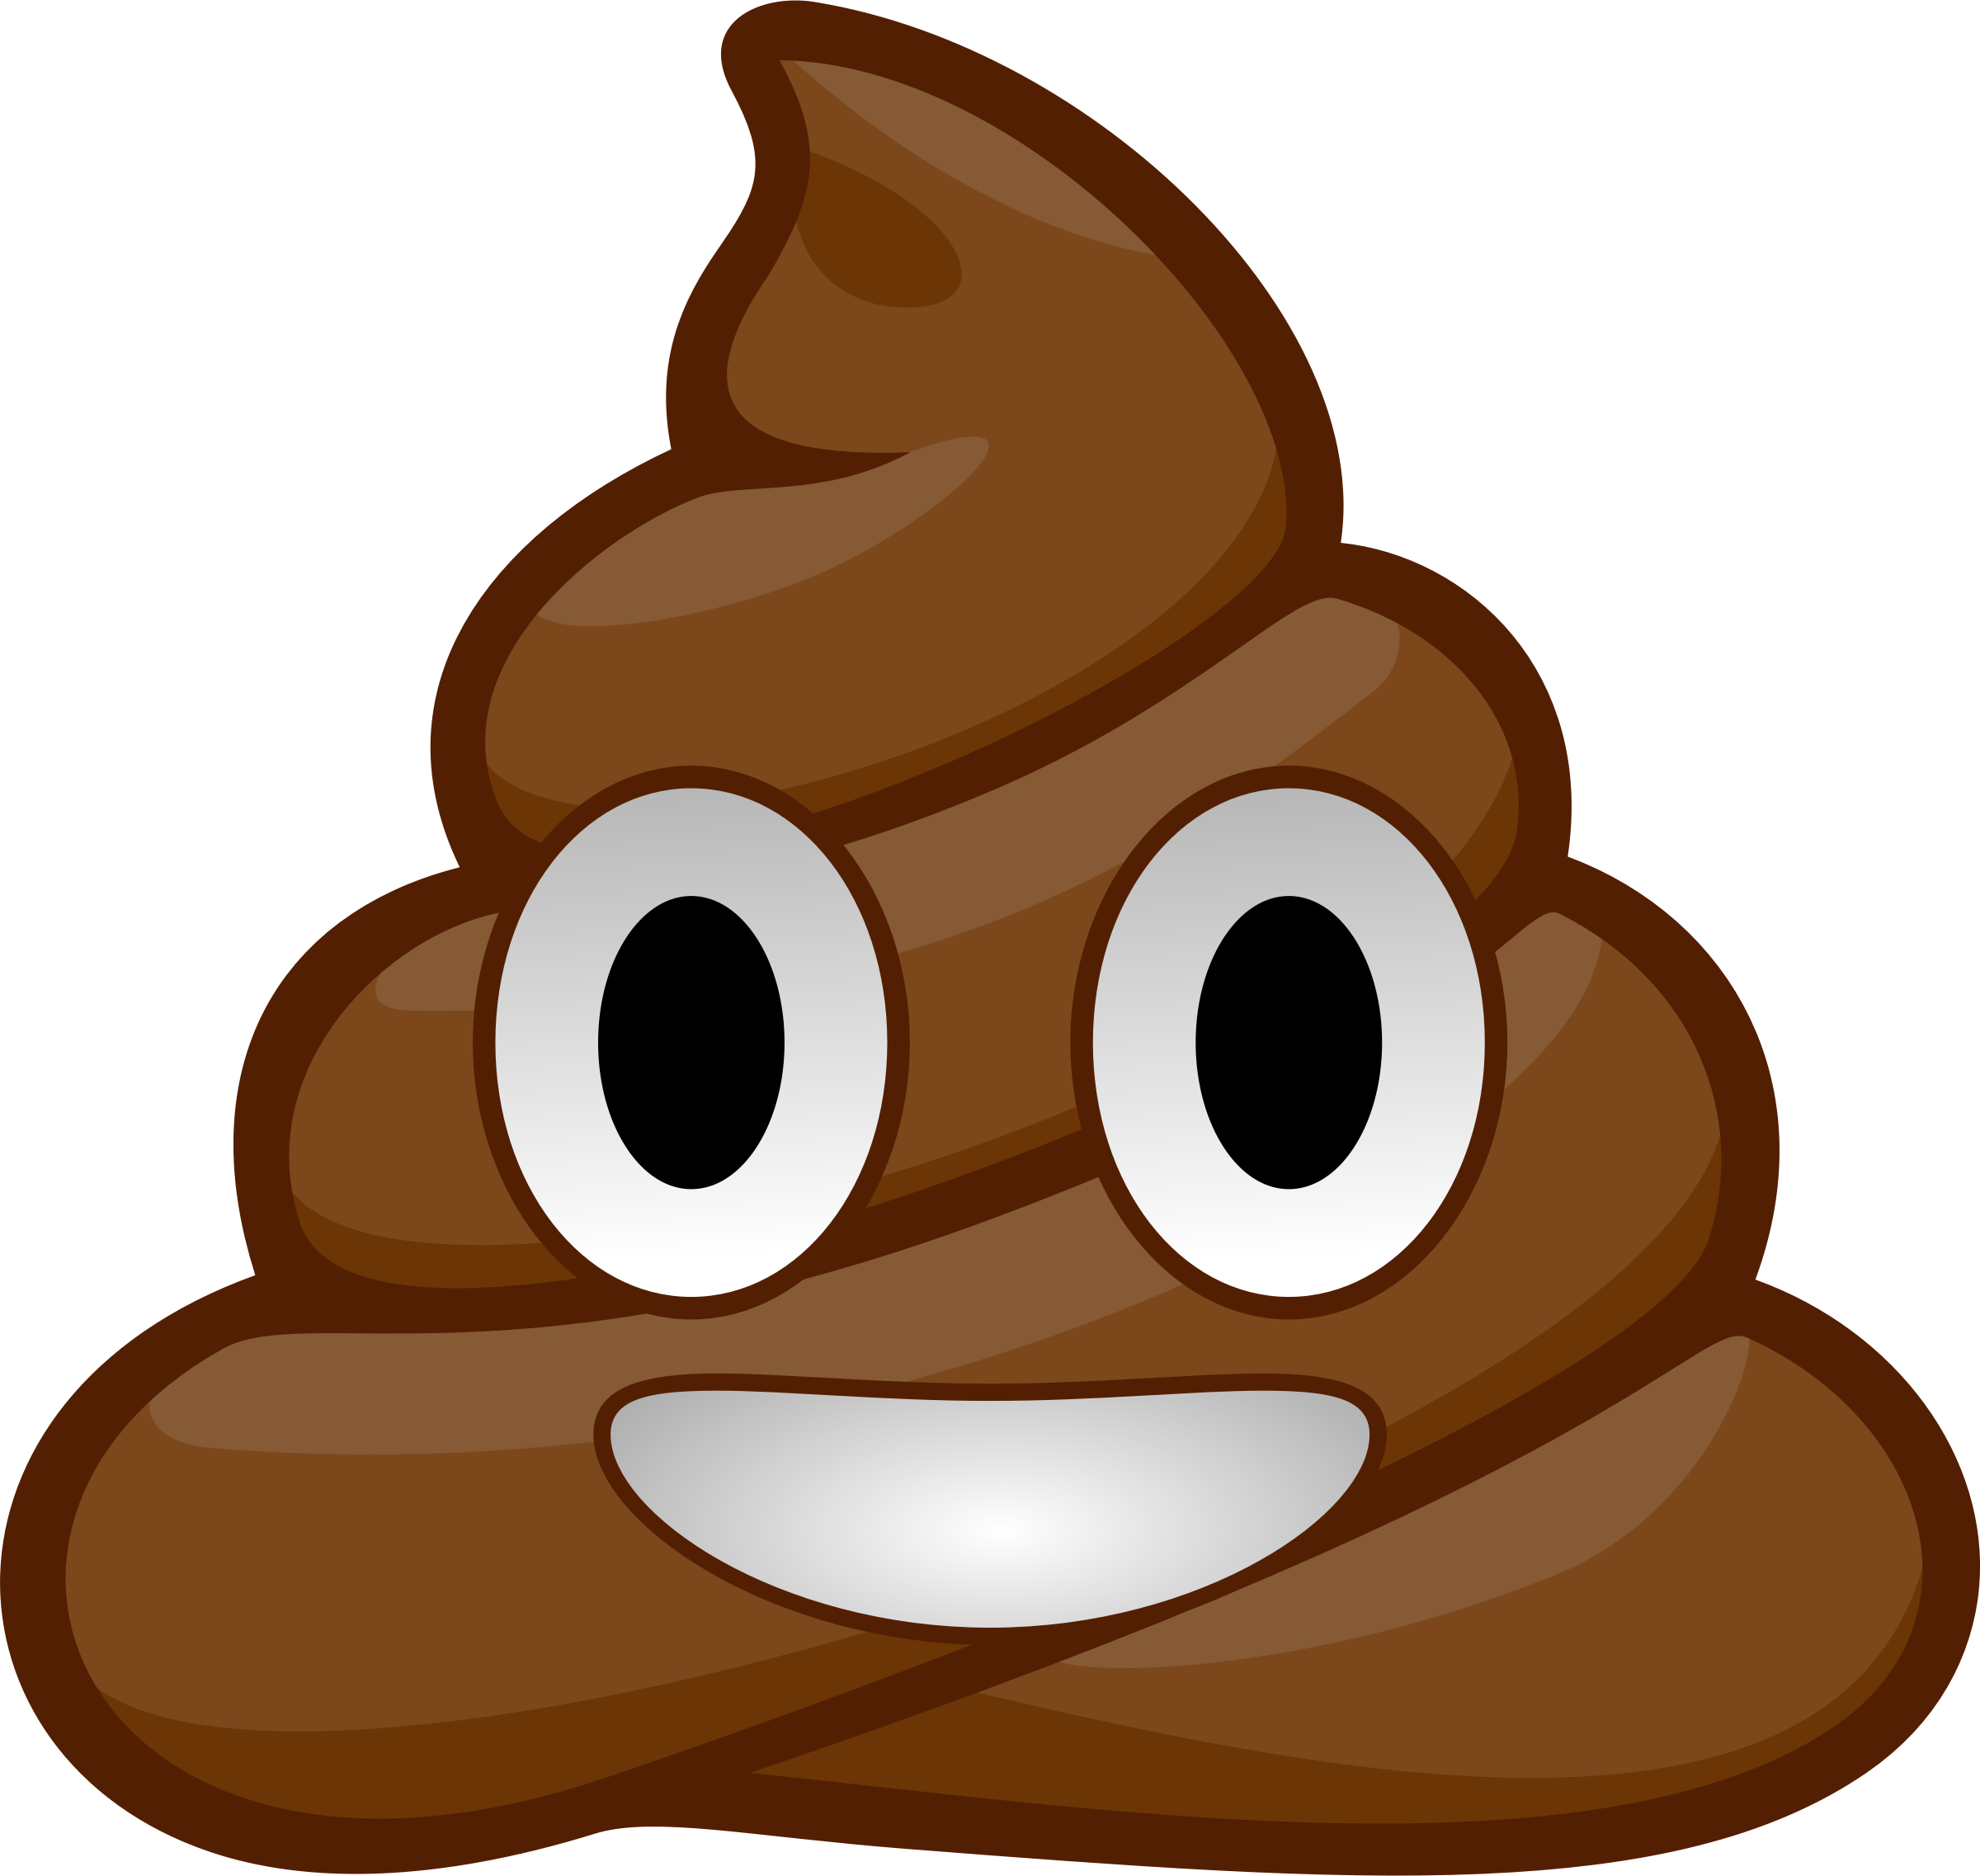 Big Image - Poop Emoji (4000x4000)